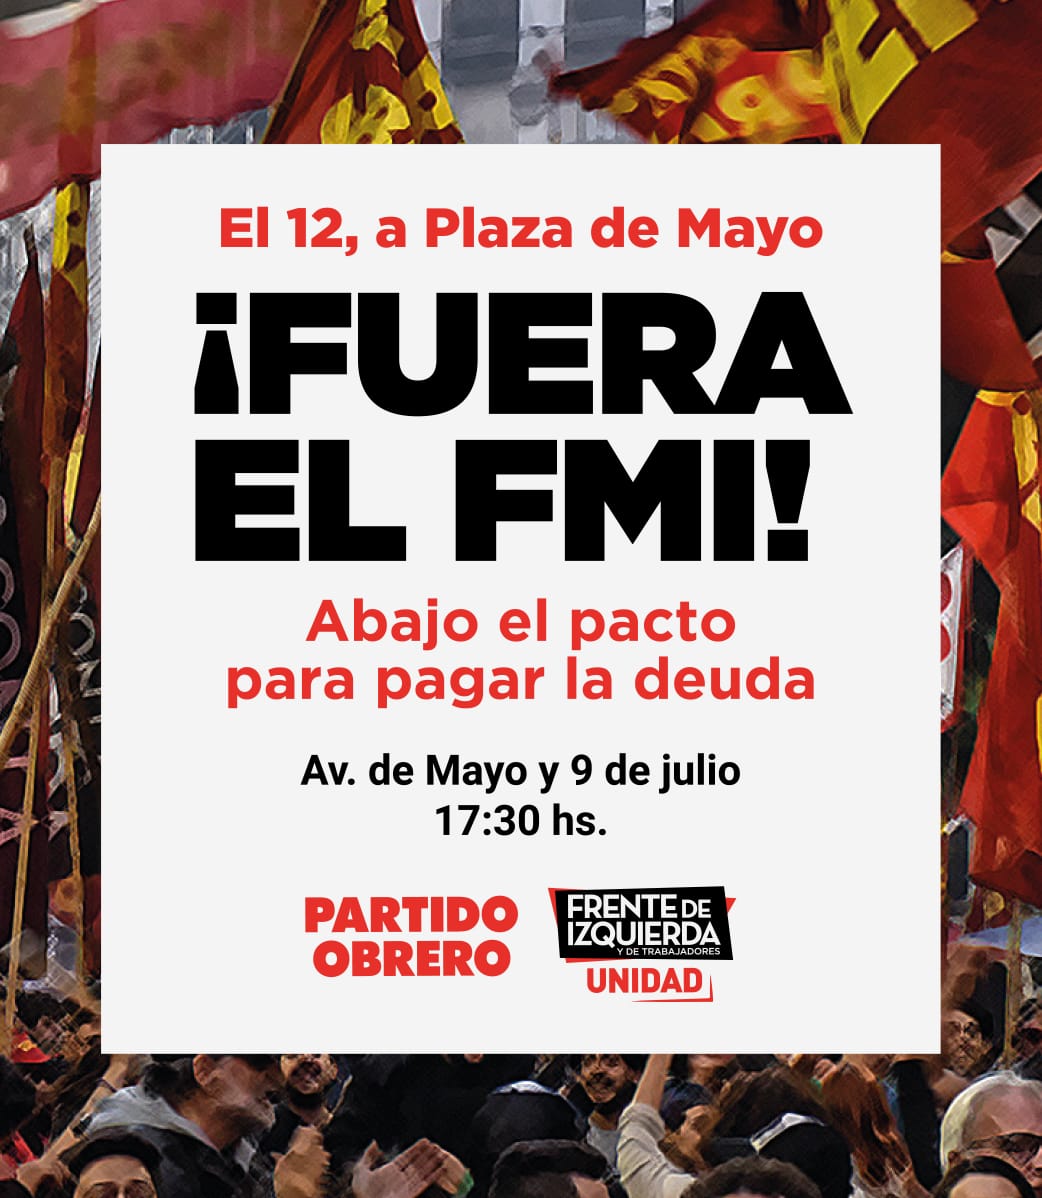 [FueraElFMI] Miércoles, 17.30h, movilización y acto en Plaza de Mayo